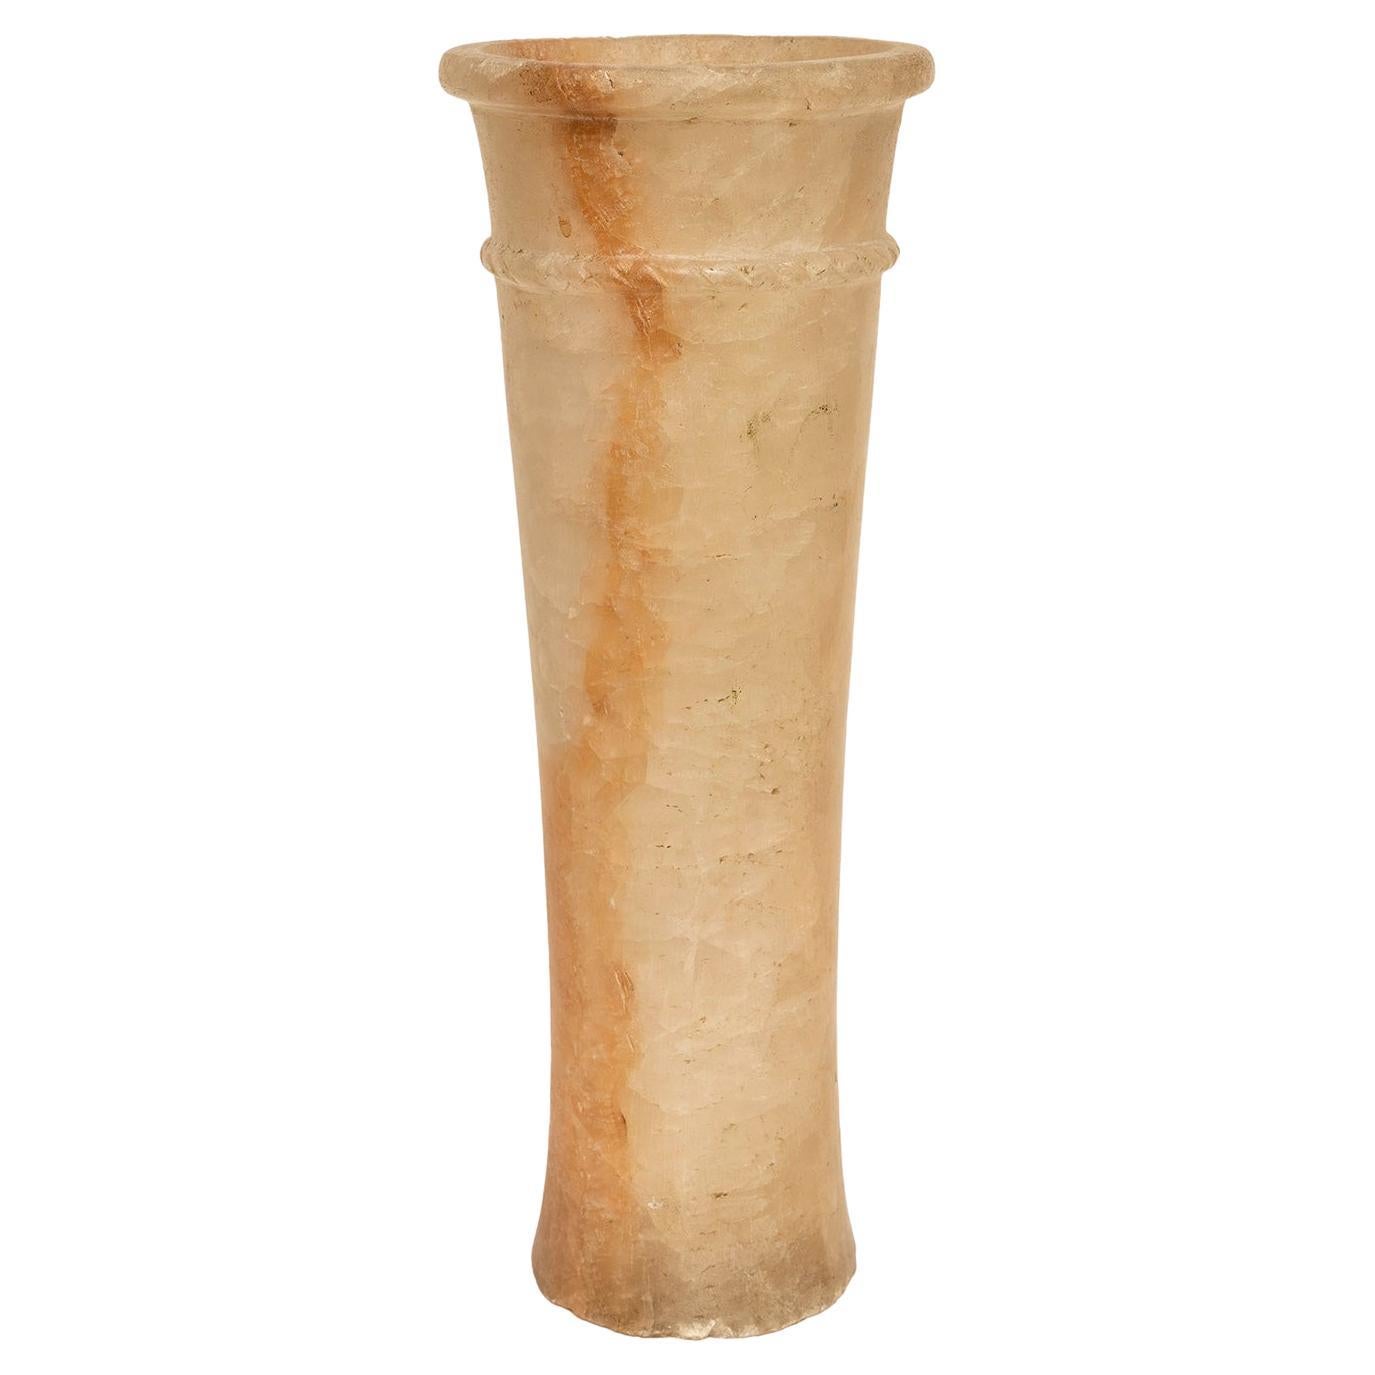 Vase, Gefäß, Alabaster, spitz zulaufende hohe Höhe, 40 cm, 16 Ägyptisch